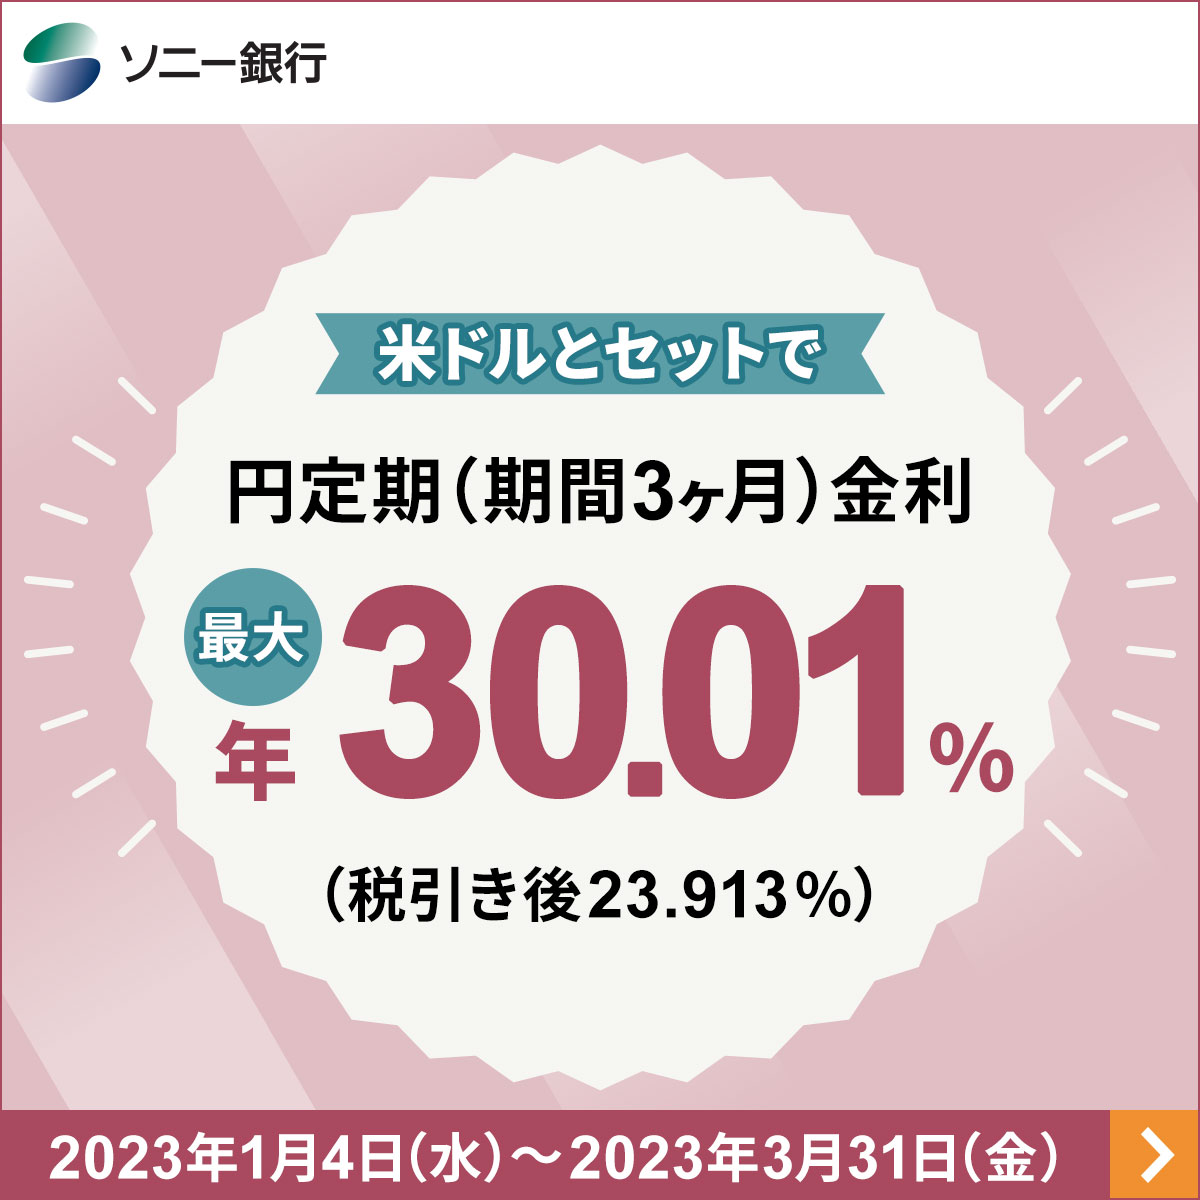 円定期金利 最大 年30.01%_ソニー銀行